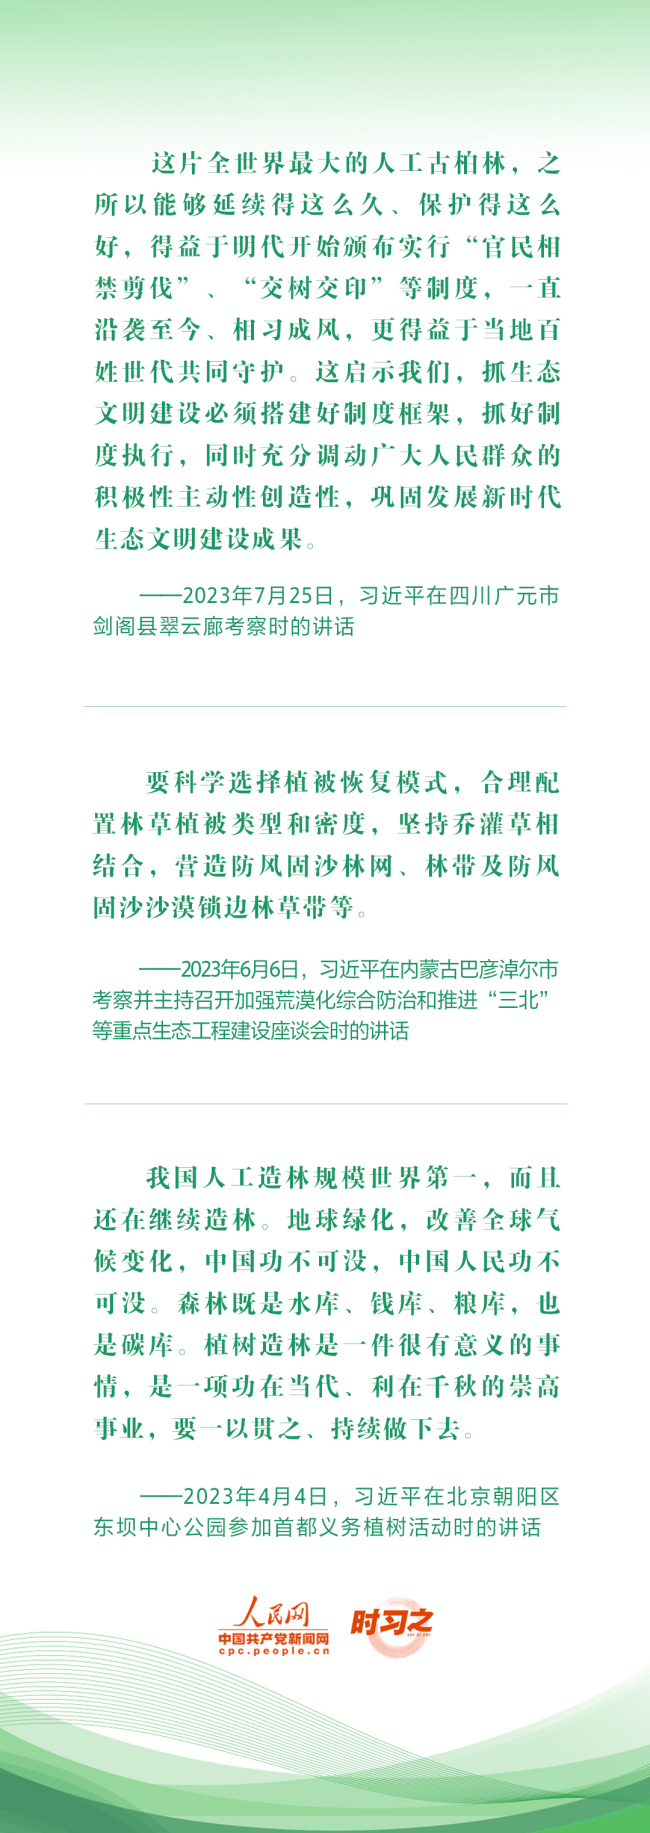 2023年中策划·谱写中国式现代化建设新篇章 绿水青山映初心 总书记心系“绿色中国”